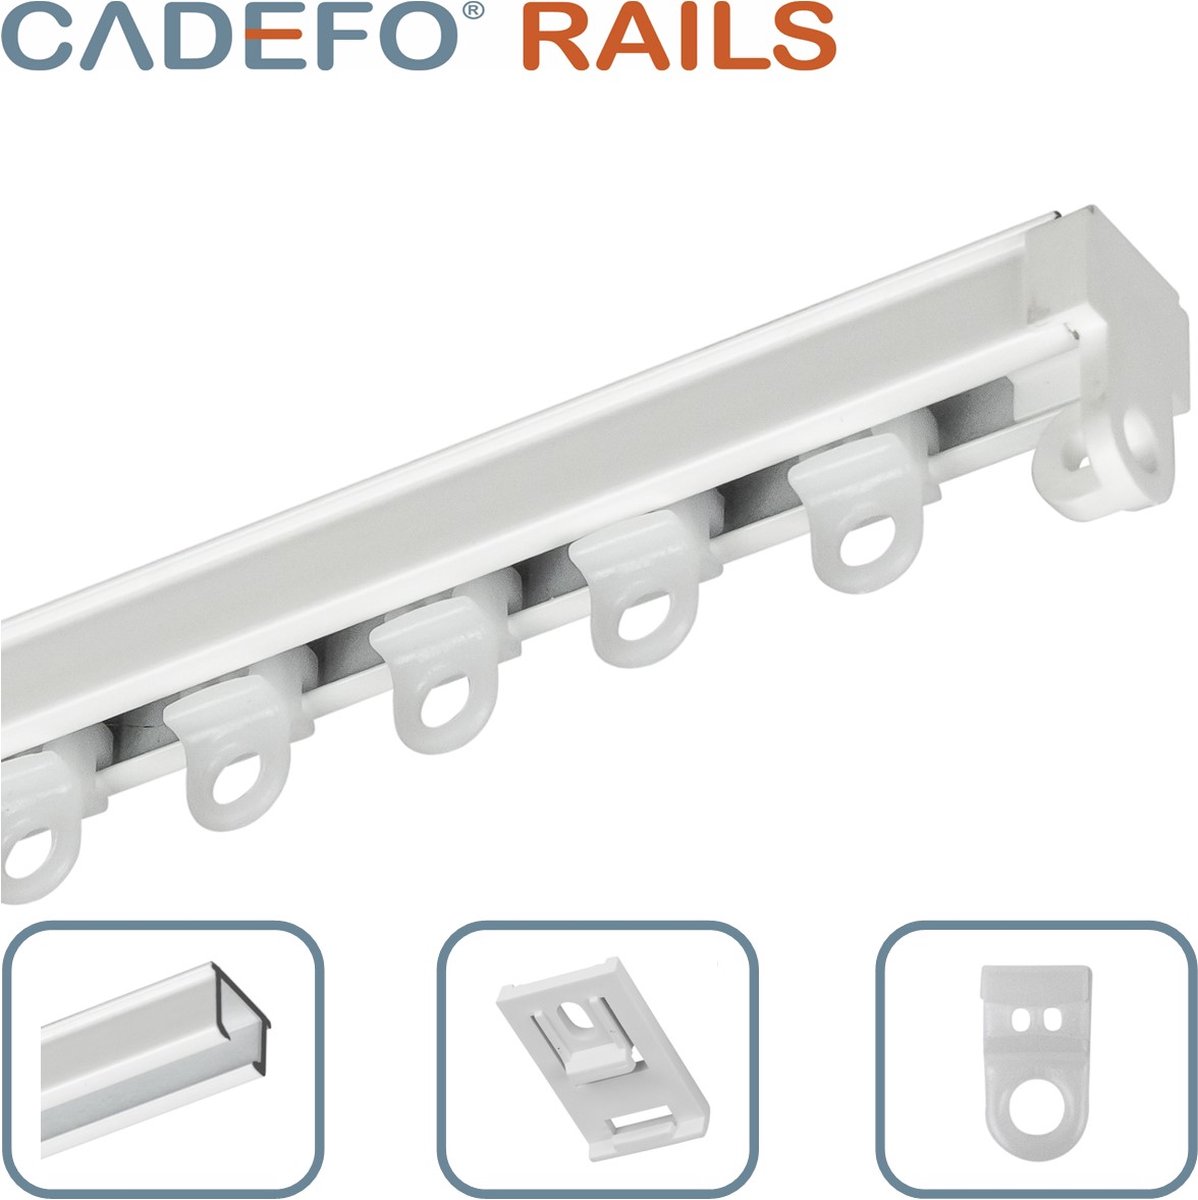 CADEFO RAILS (401 - 450 cm) Gordijnrails - Compleet op maat! - UIT 1 STUK - Leverbaar tot 6 meter - Plafondbevestiging - Lengte 402 cm